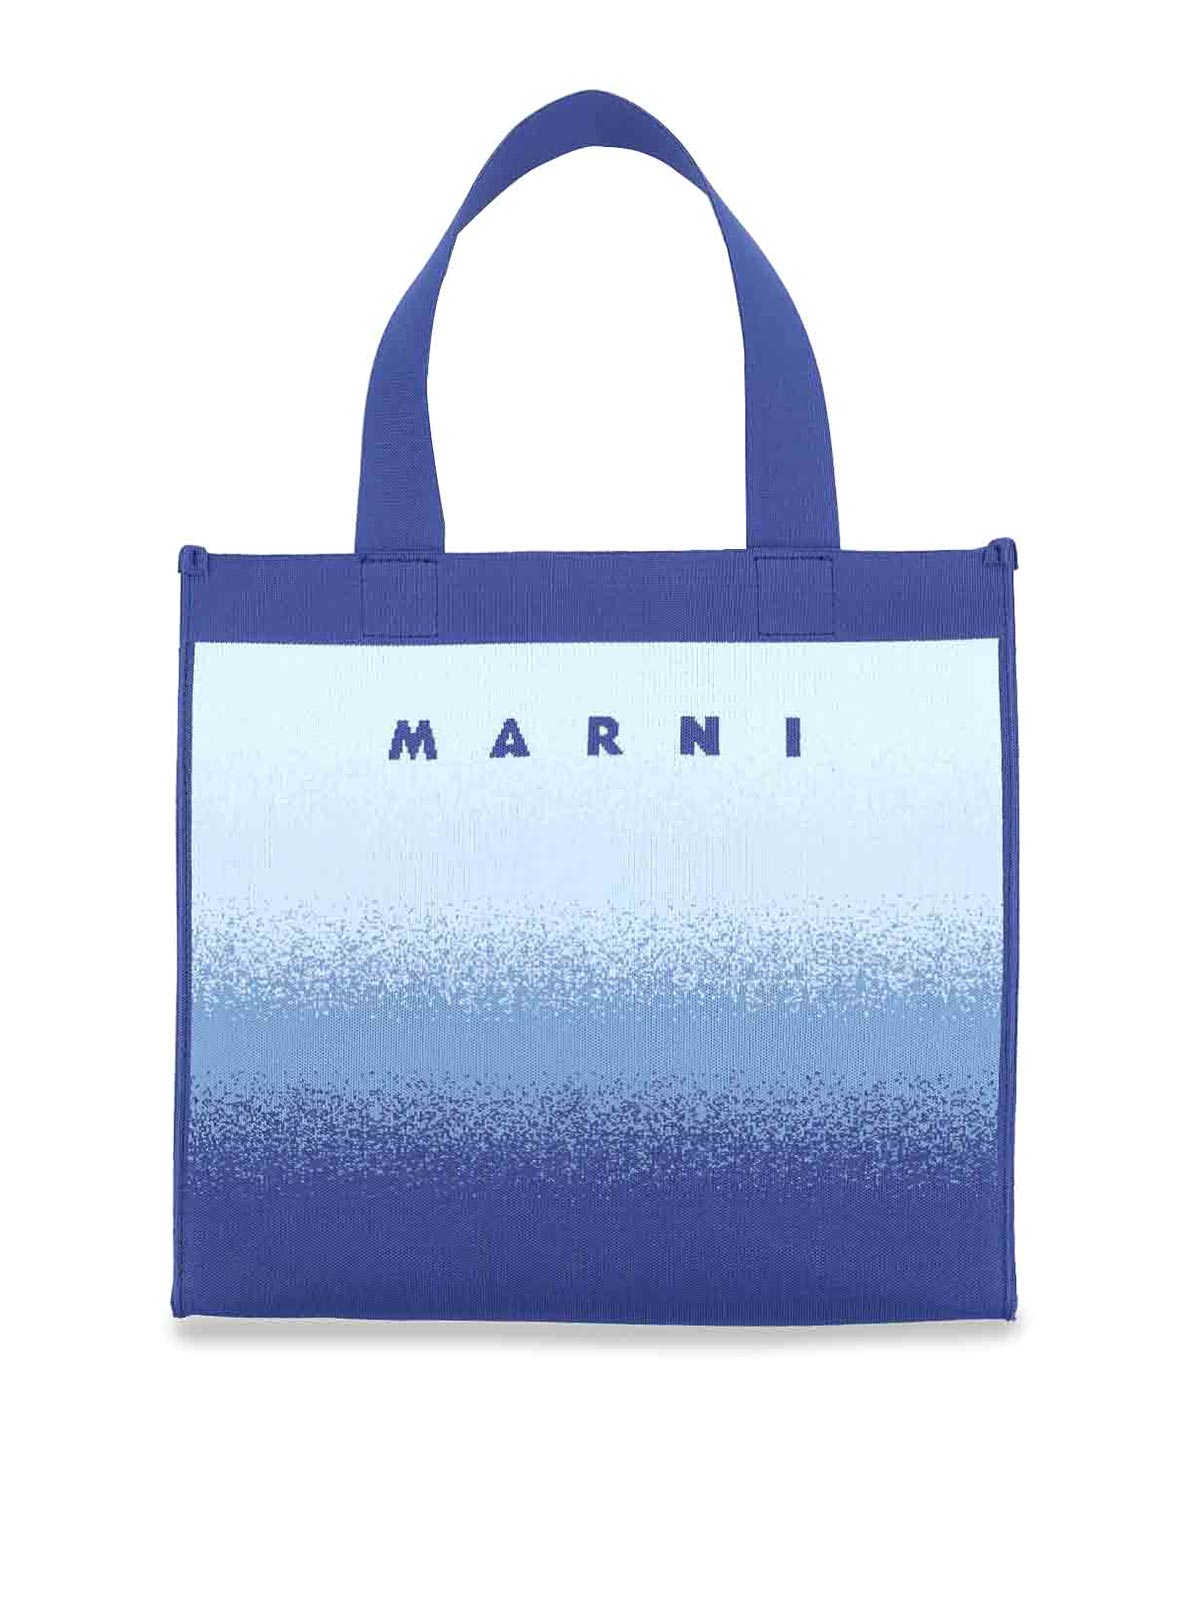 Marni Logo Tote Bag In Blue